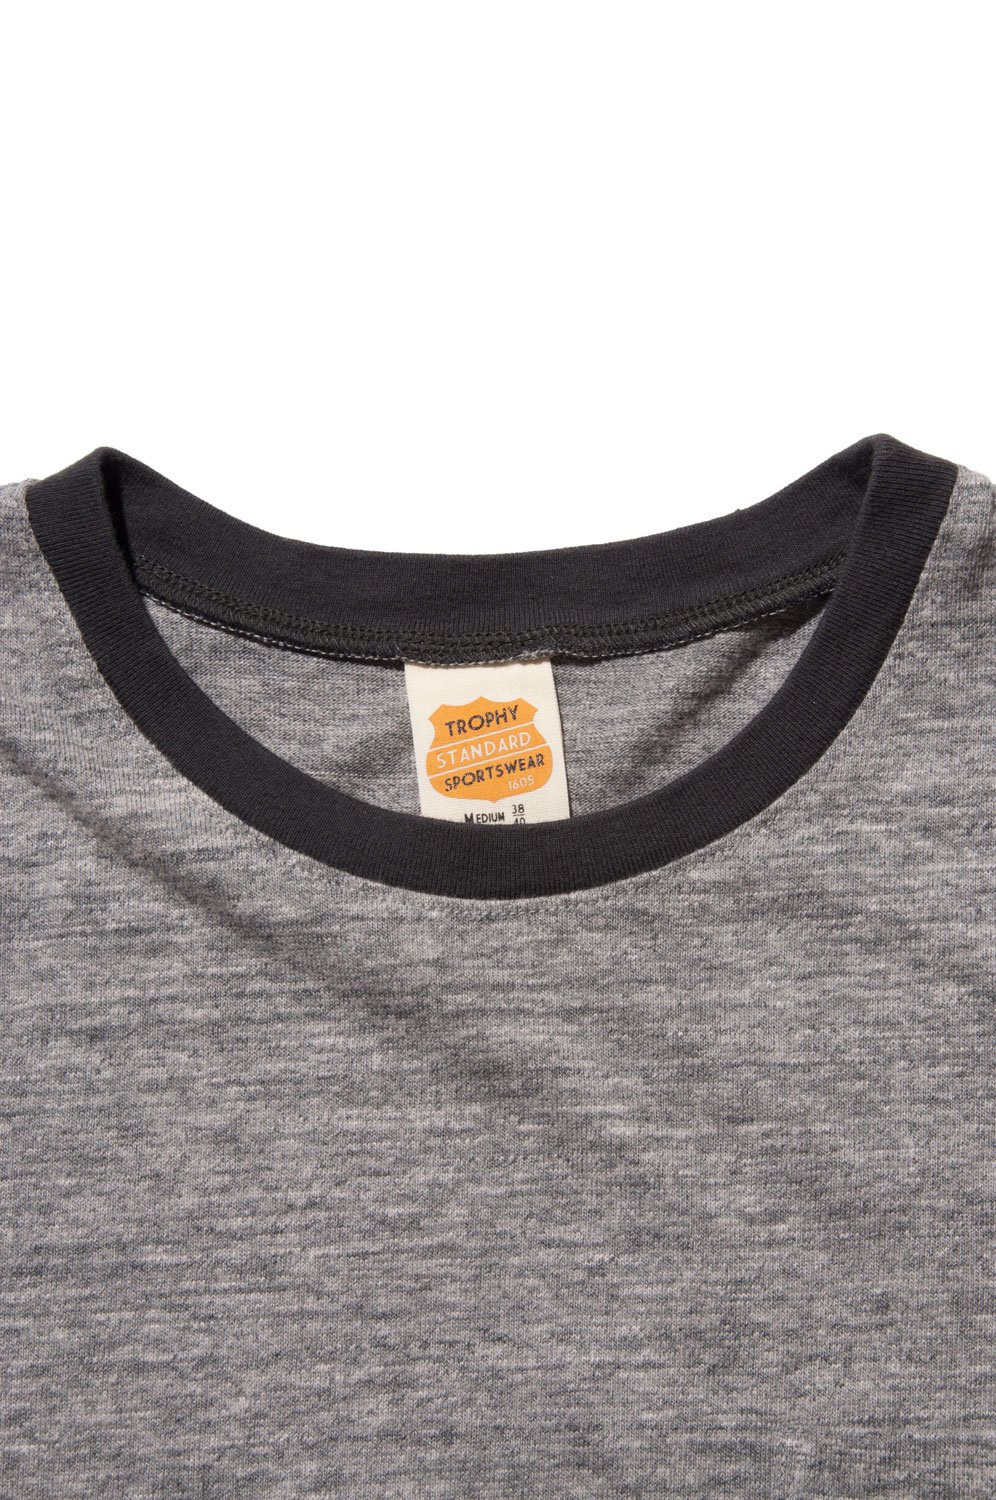 TROPHY CLOTHING(トロフィークロージング) Tシャツ Champion Mix Box Logo Pocket Tee 通販正規